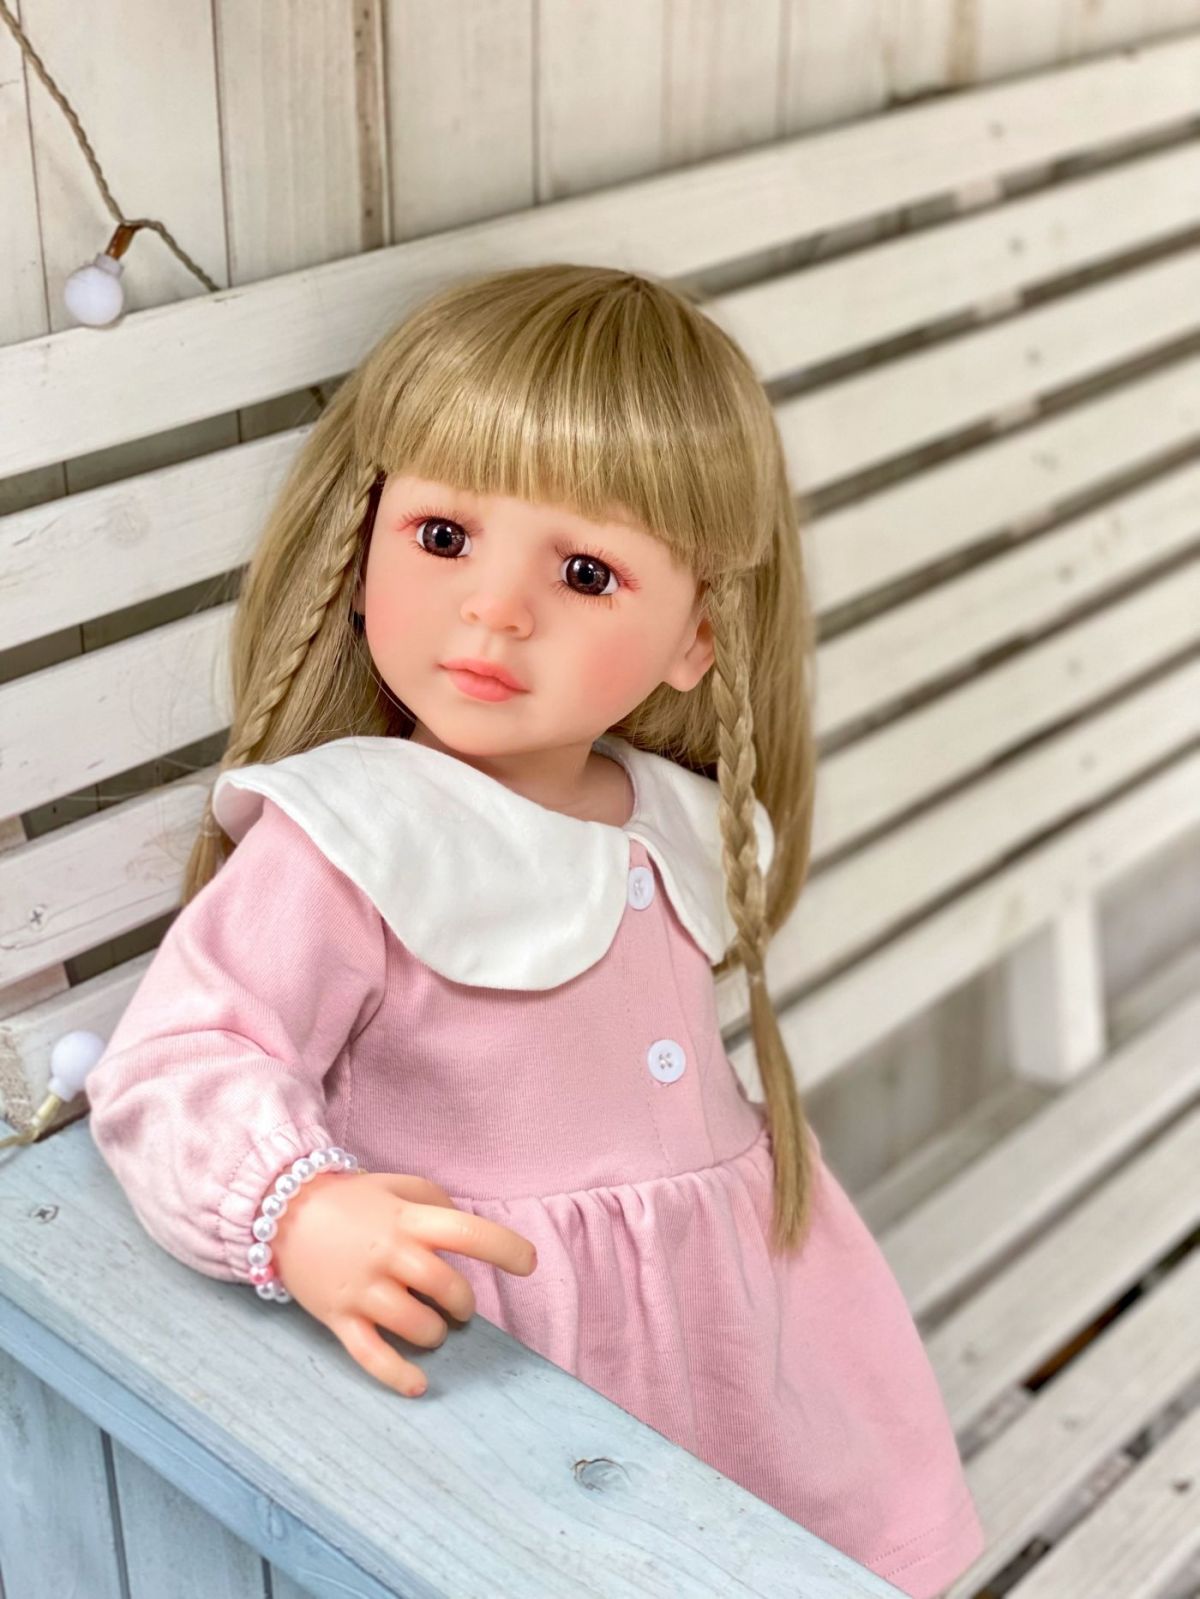 Reborn Baby Dolls Silicone Cute Soft Baby Doll Fashion Bebe Reborn Dolls 55cm Baby Toys for Girls (3)